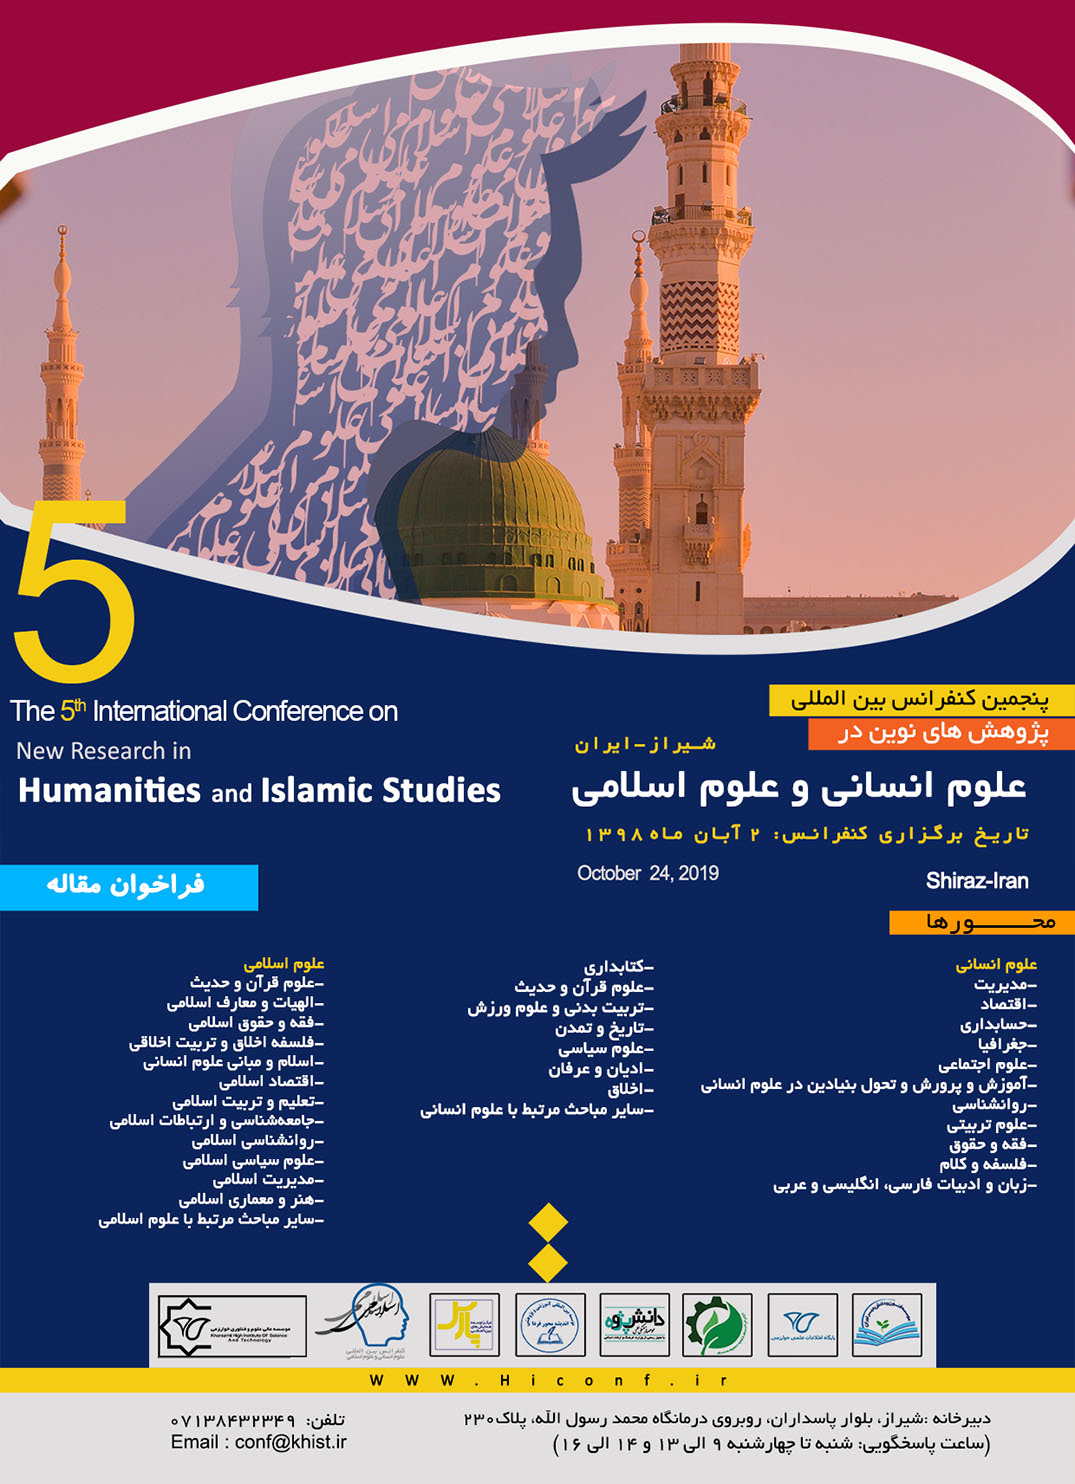 پوستر کنفرانس بین المللی پژوهش های نوین در علوم انسانی و علوم اسلامی